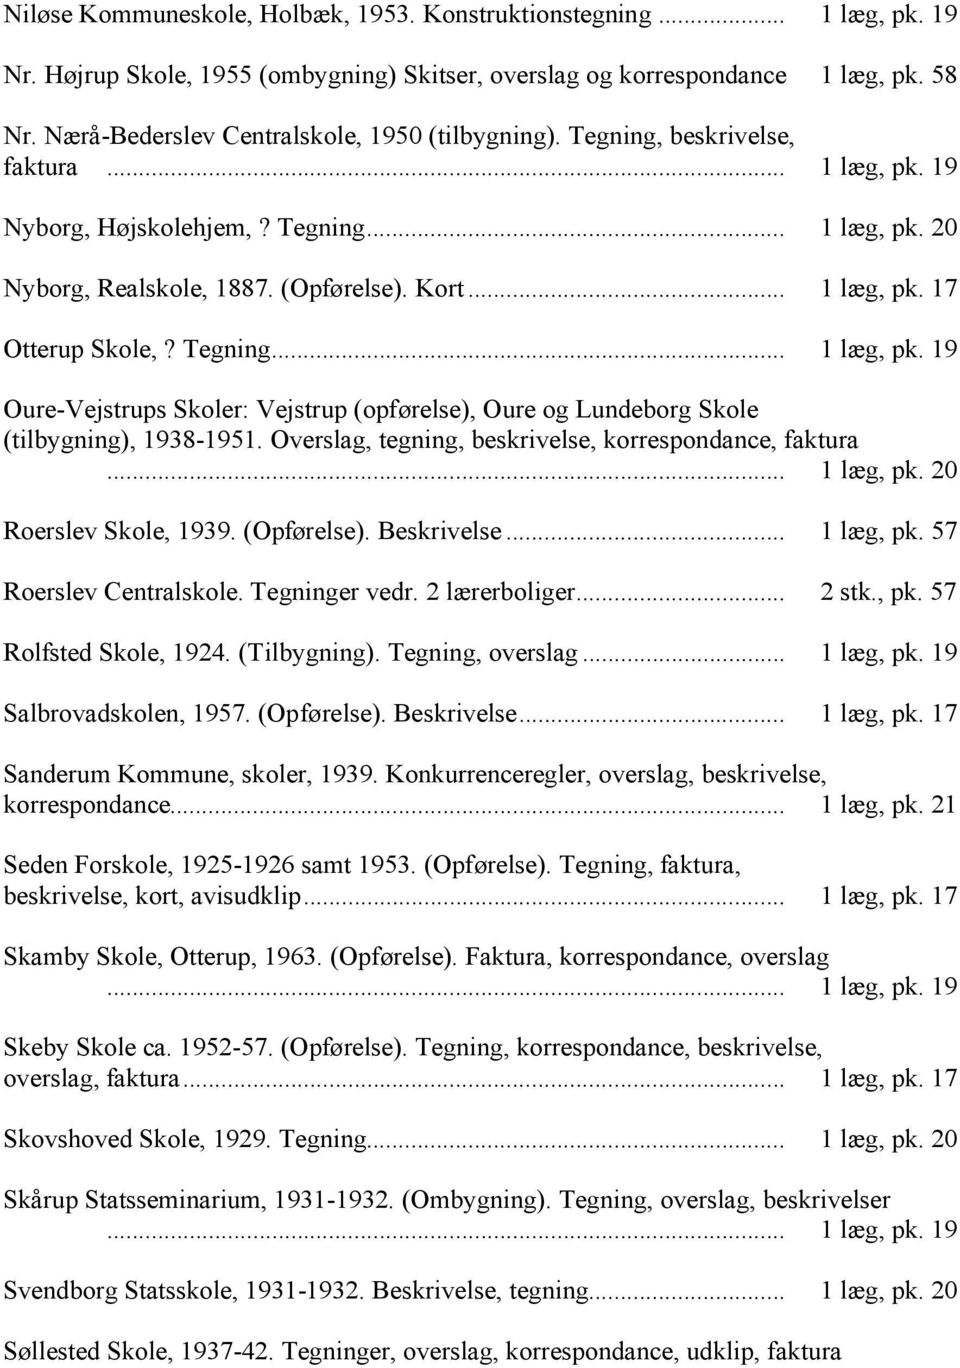 Tegning... 1 læg, pk. 19 Oure-Vejstrups Skoler: Vejstrup (opførelse), Oure og Lundeborg Skole (tilbygning), 1938-1951. Overslag, tegning, beskrivelse, korrespondance, faktura... 1 læg, pk. 20 Roerslev Skole, 1939.